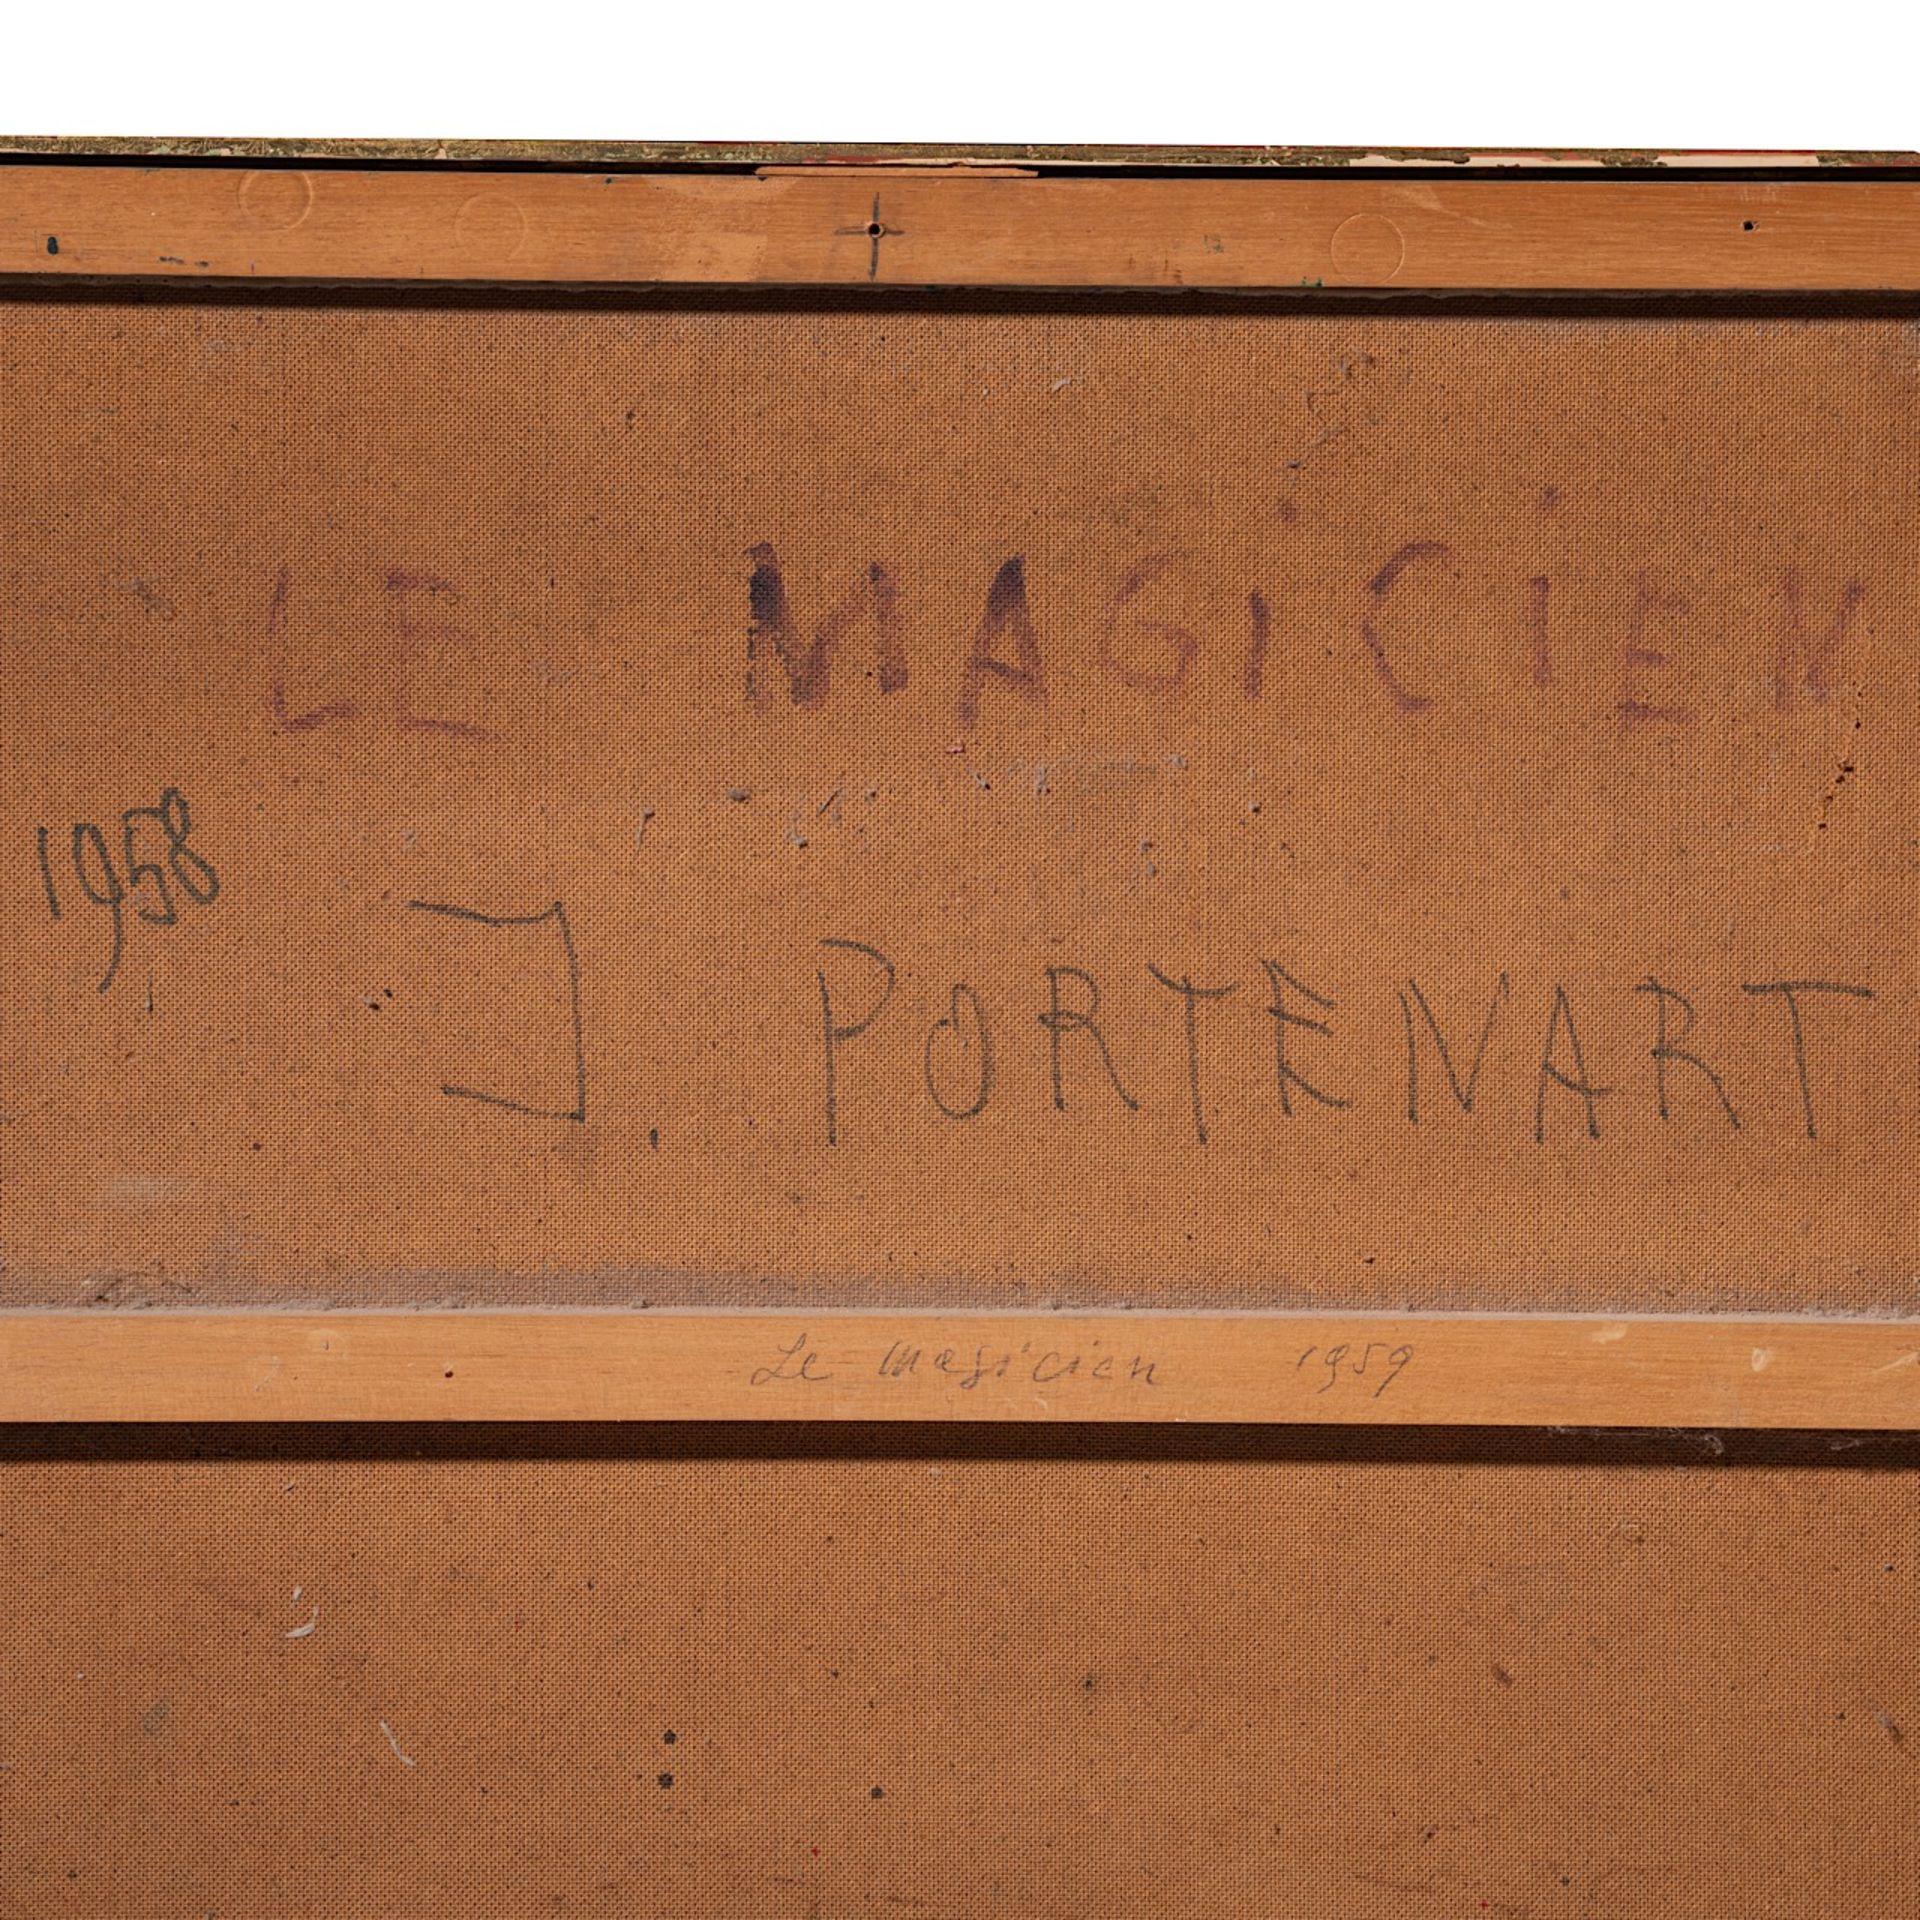 Jeanne Portenart (1911-1992), 'Le Magicien', 1958, oil on board 100 x 70 cm. (39.3 x 27.5 in.) - Image 5 of 7